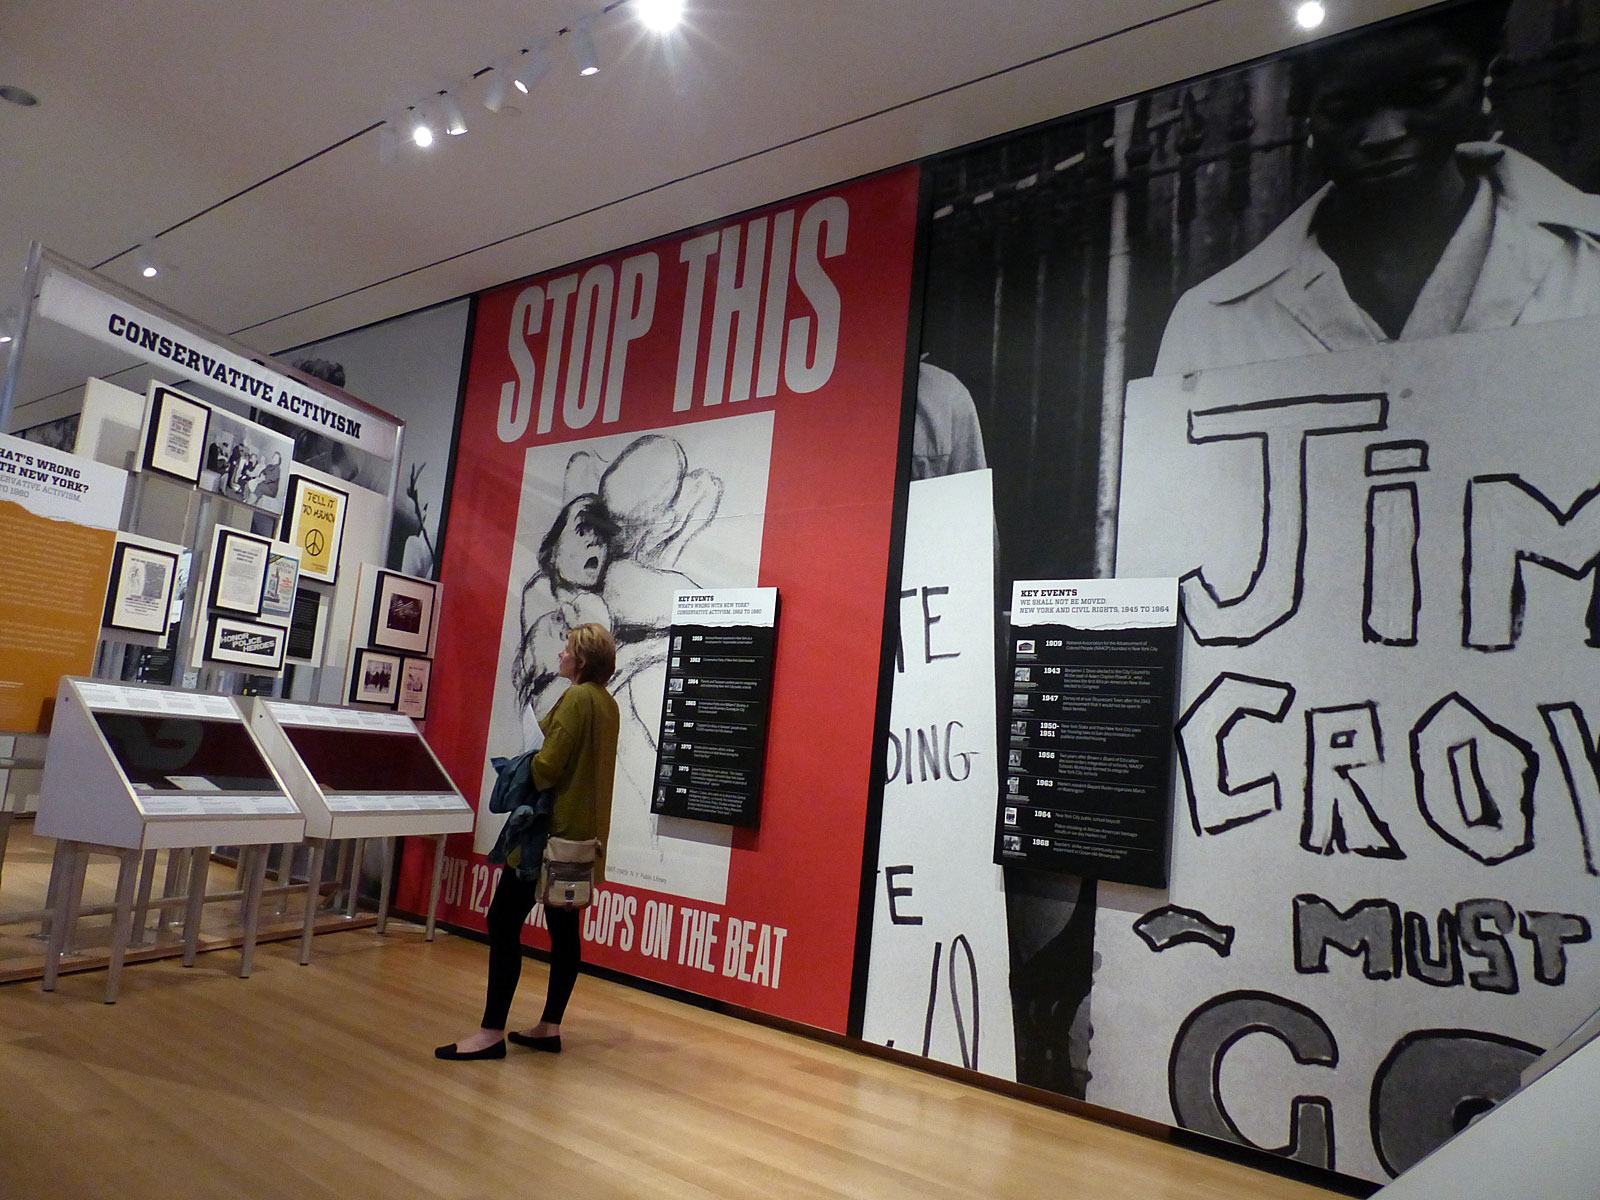 A fotografia é da exposição Activist New York. As seções retratadas na fotografia são da galeria, em Direitos civis e ativismo conservador, nas seções da cidade de Nova York.